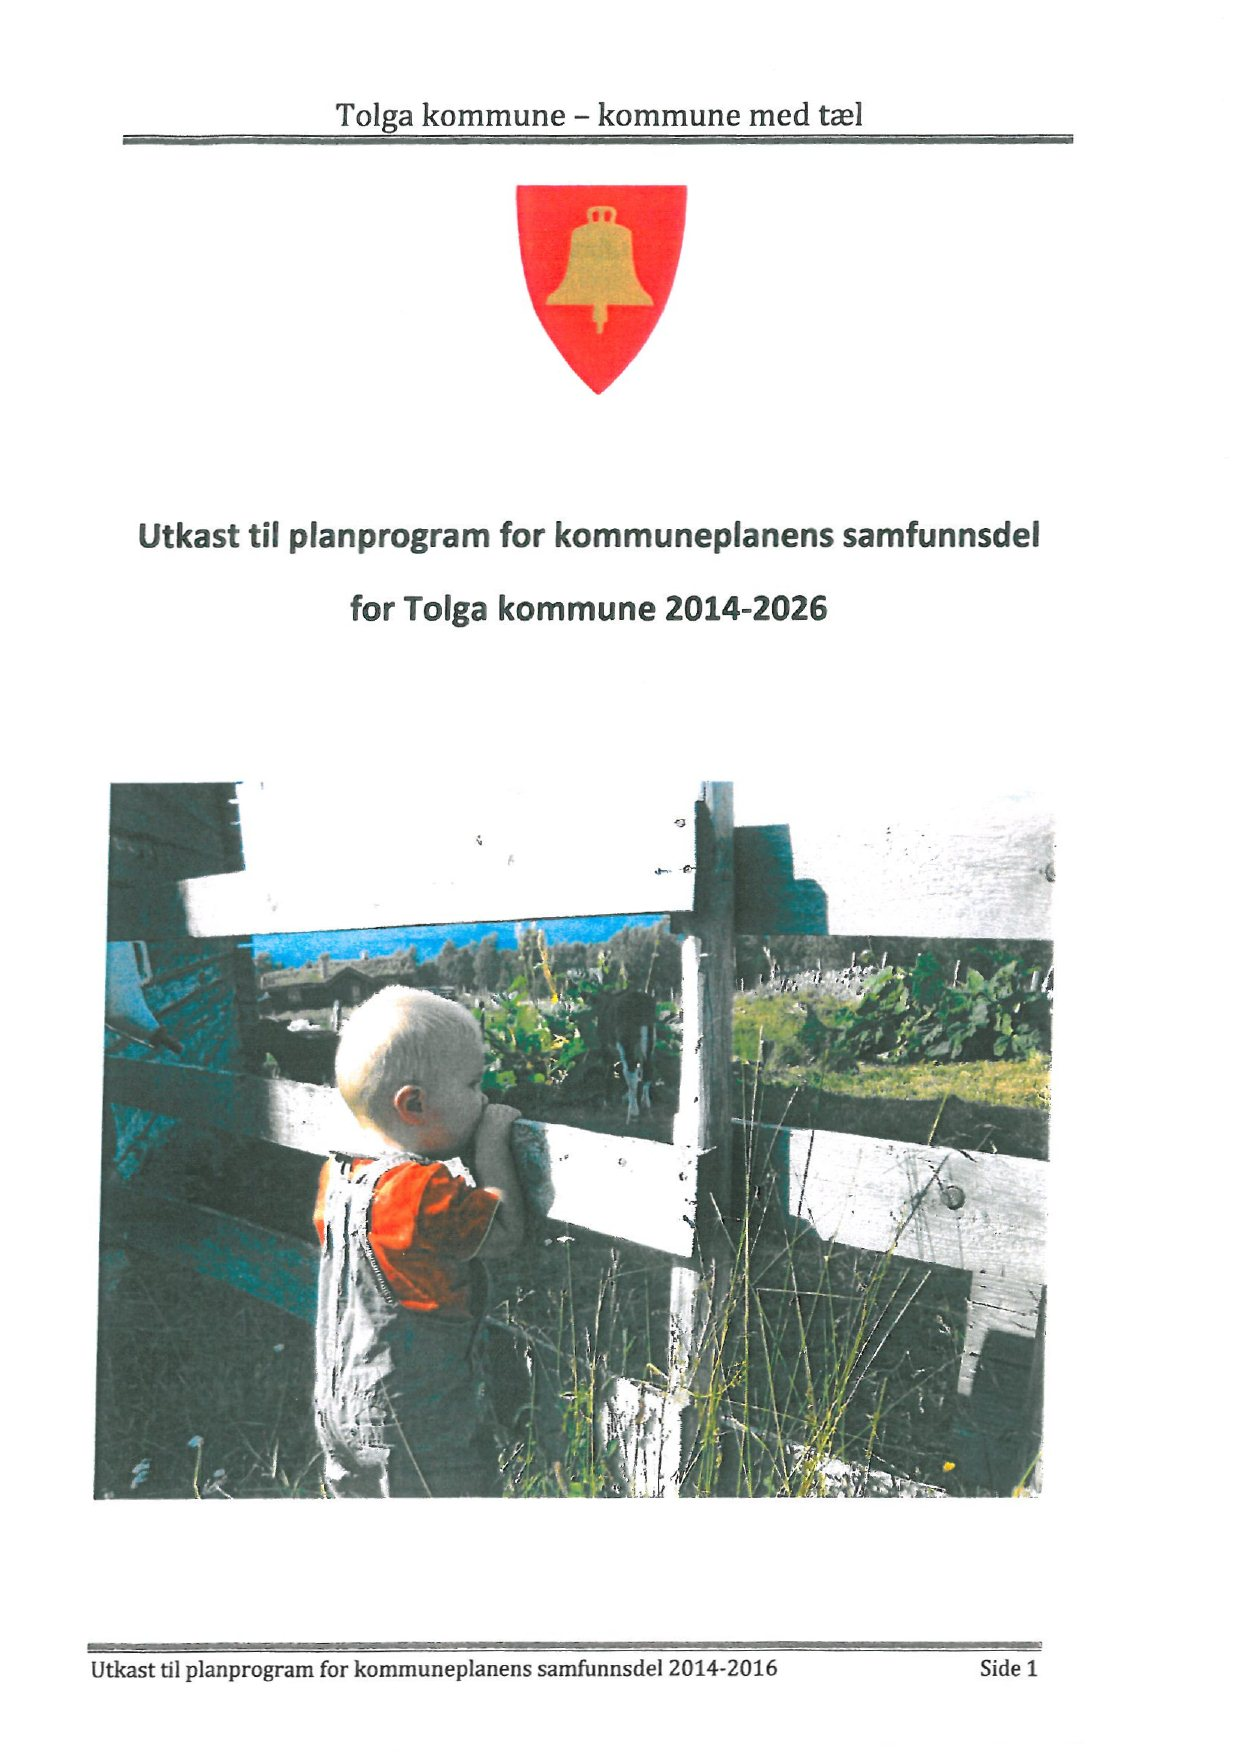 Utkast til planprogram for kommuneplanens samfunnsdel for Tolga kommune